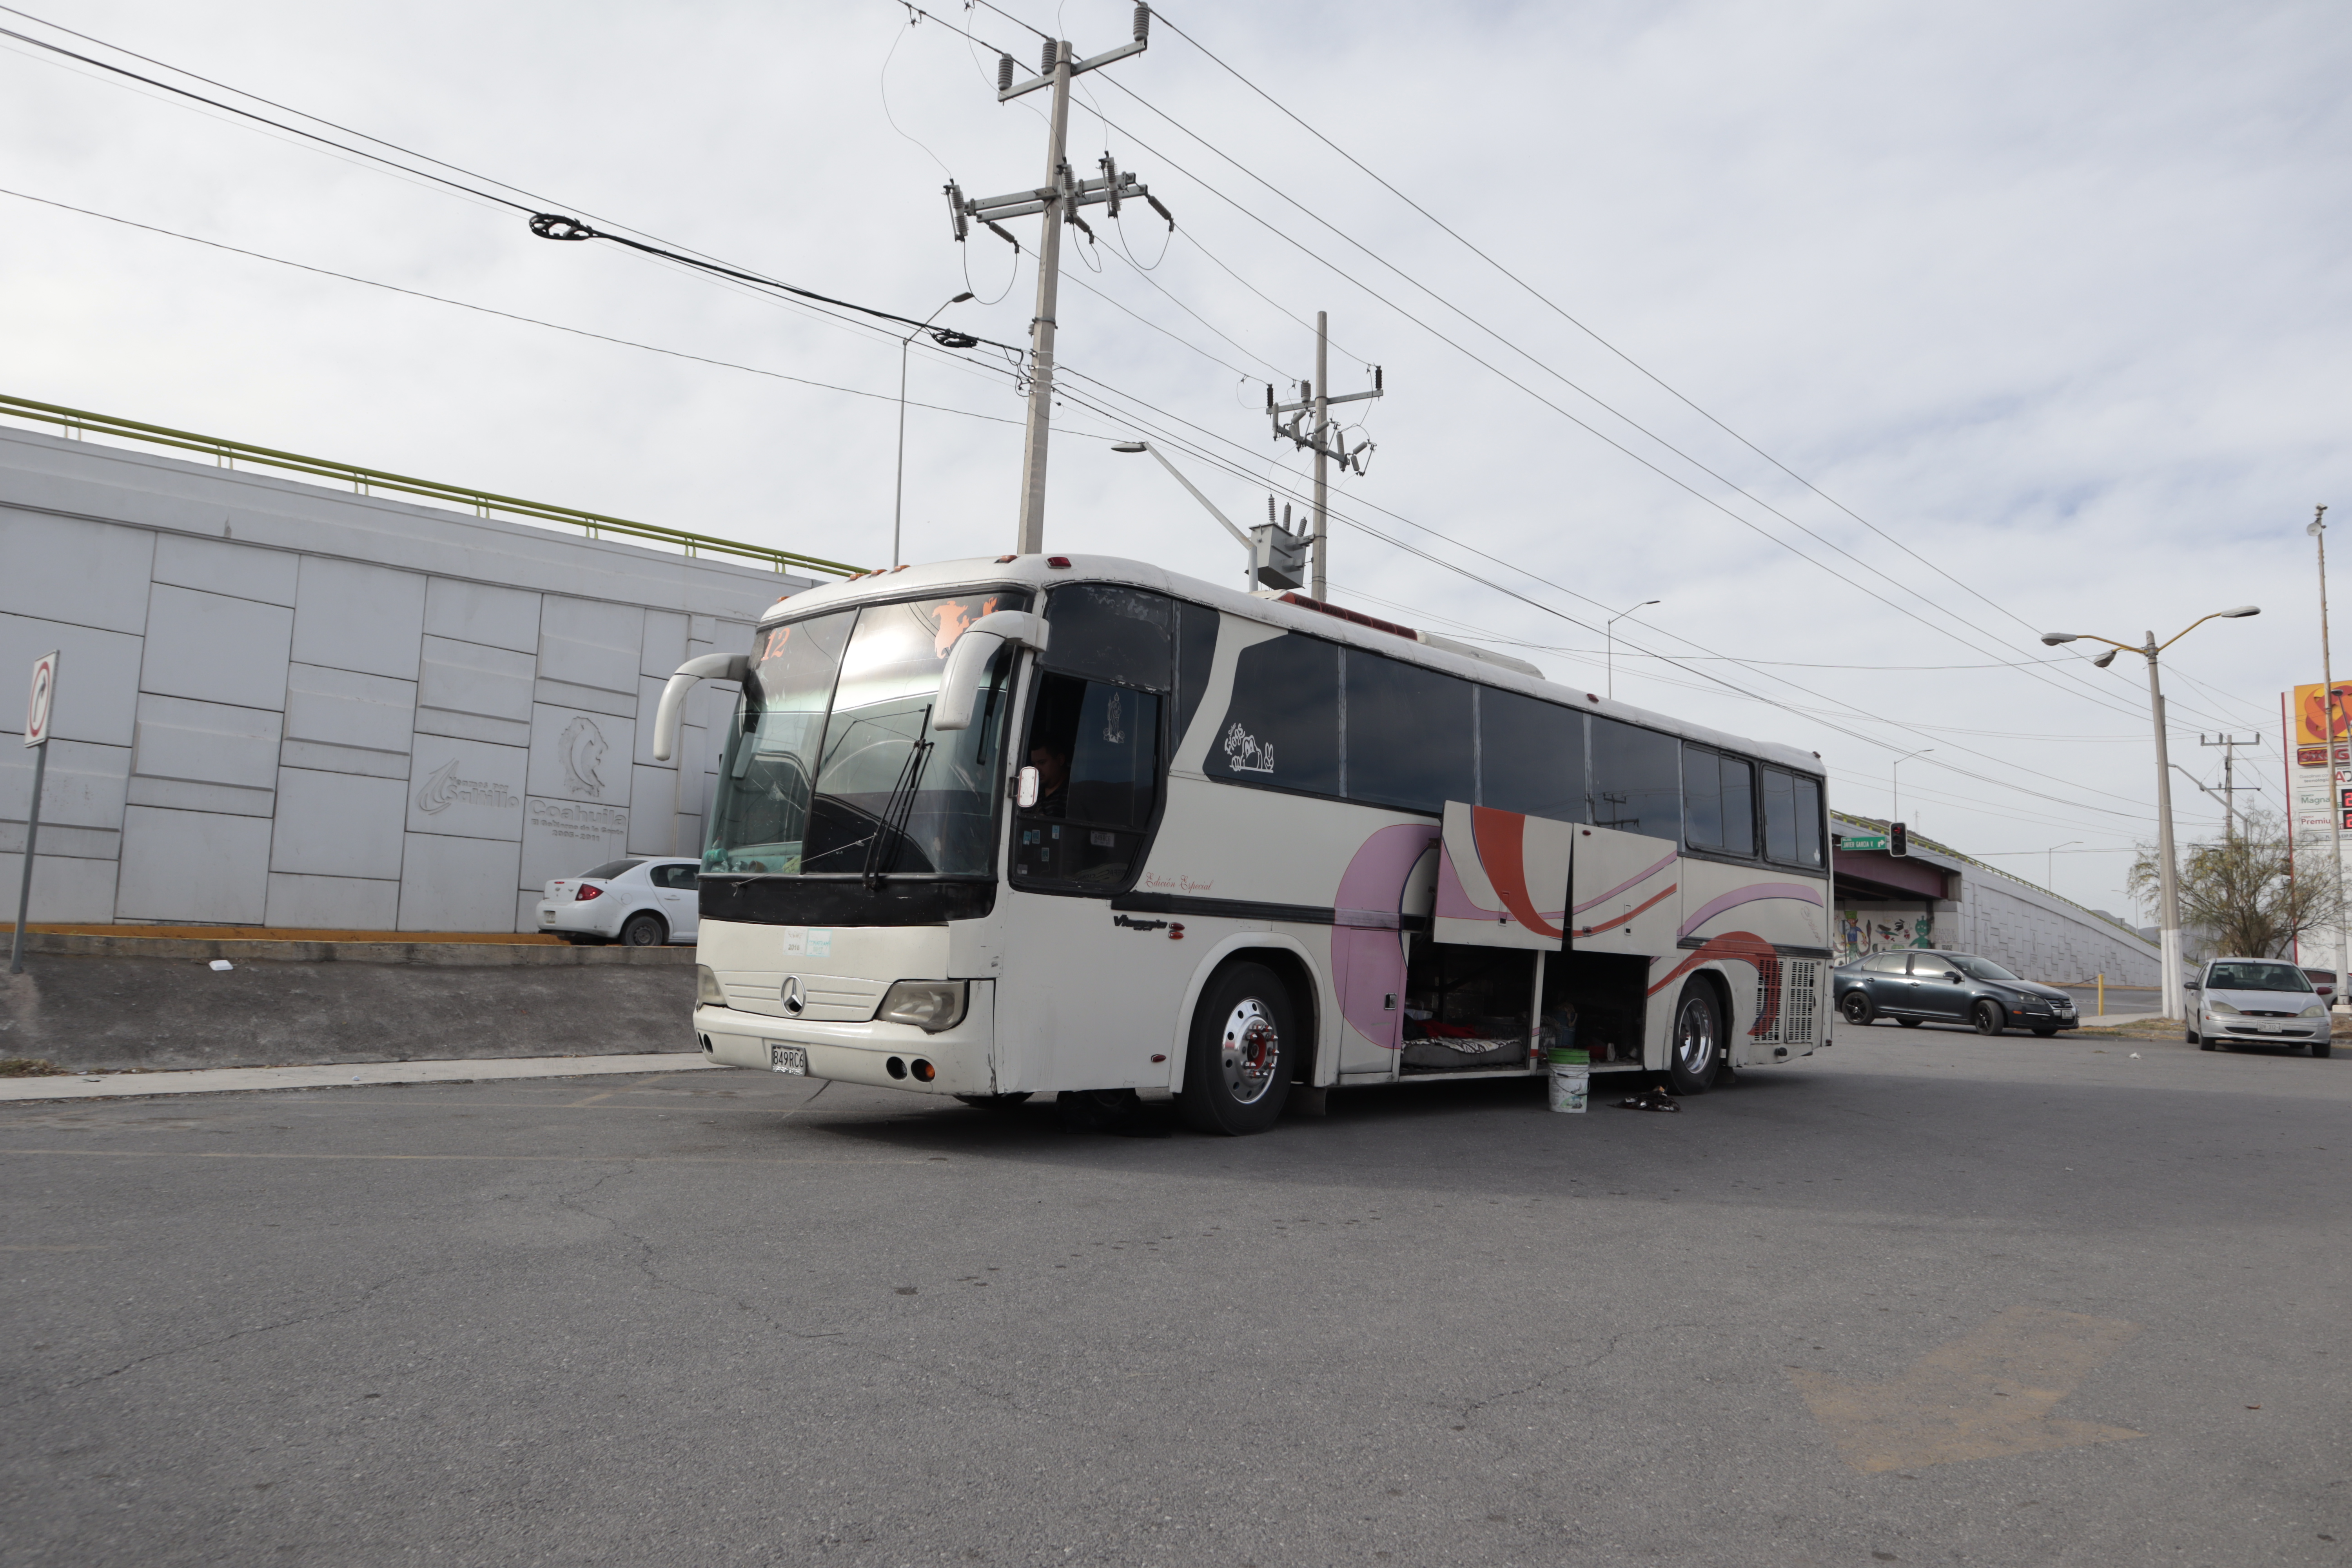 Algunos familiares viajan desde Monclova, Coahuila, hasta la capital del estado. El costo del pasaje es de 220 pesos, ida y vuelta. 
(Foto: Homero Sánchez / Vanguardia)